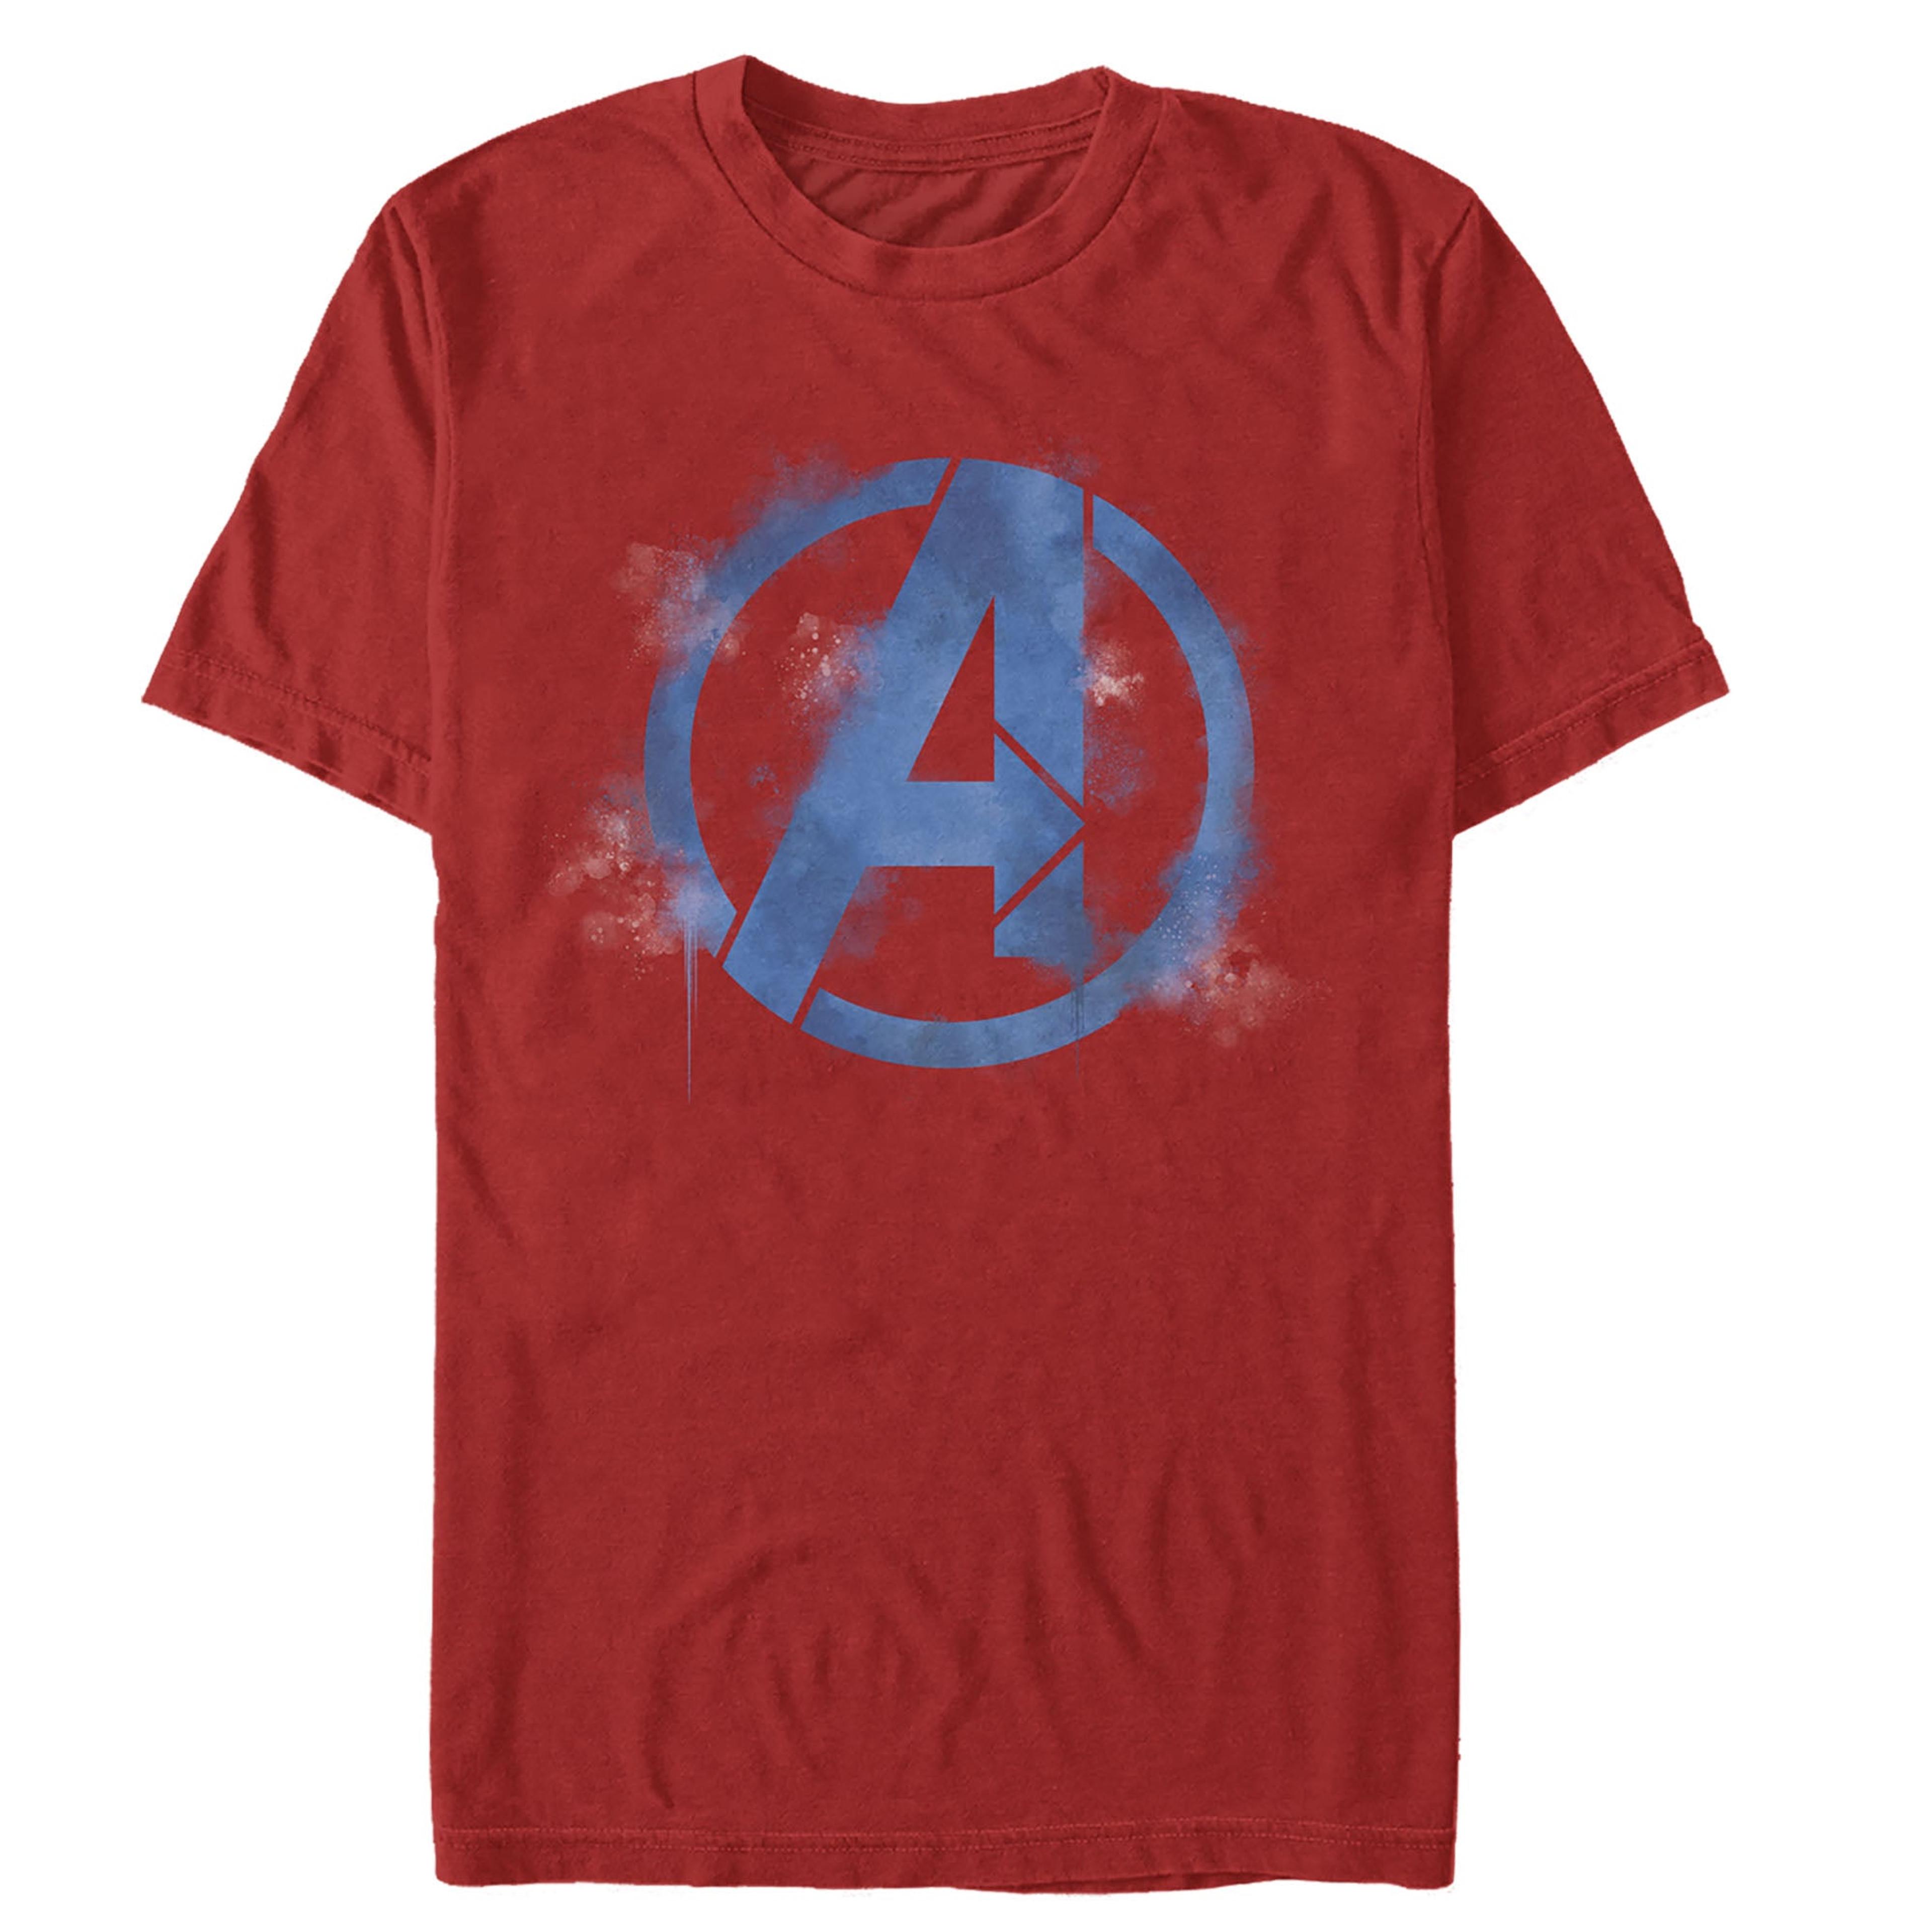 Alternate View 1 of Men's Marvel Avengers: Endgame Smudged Logo T-Shirt